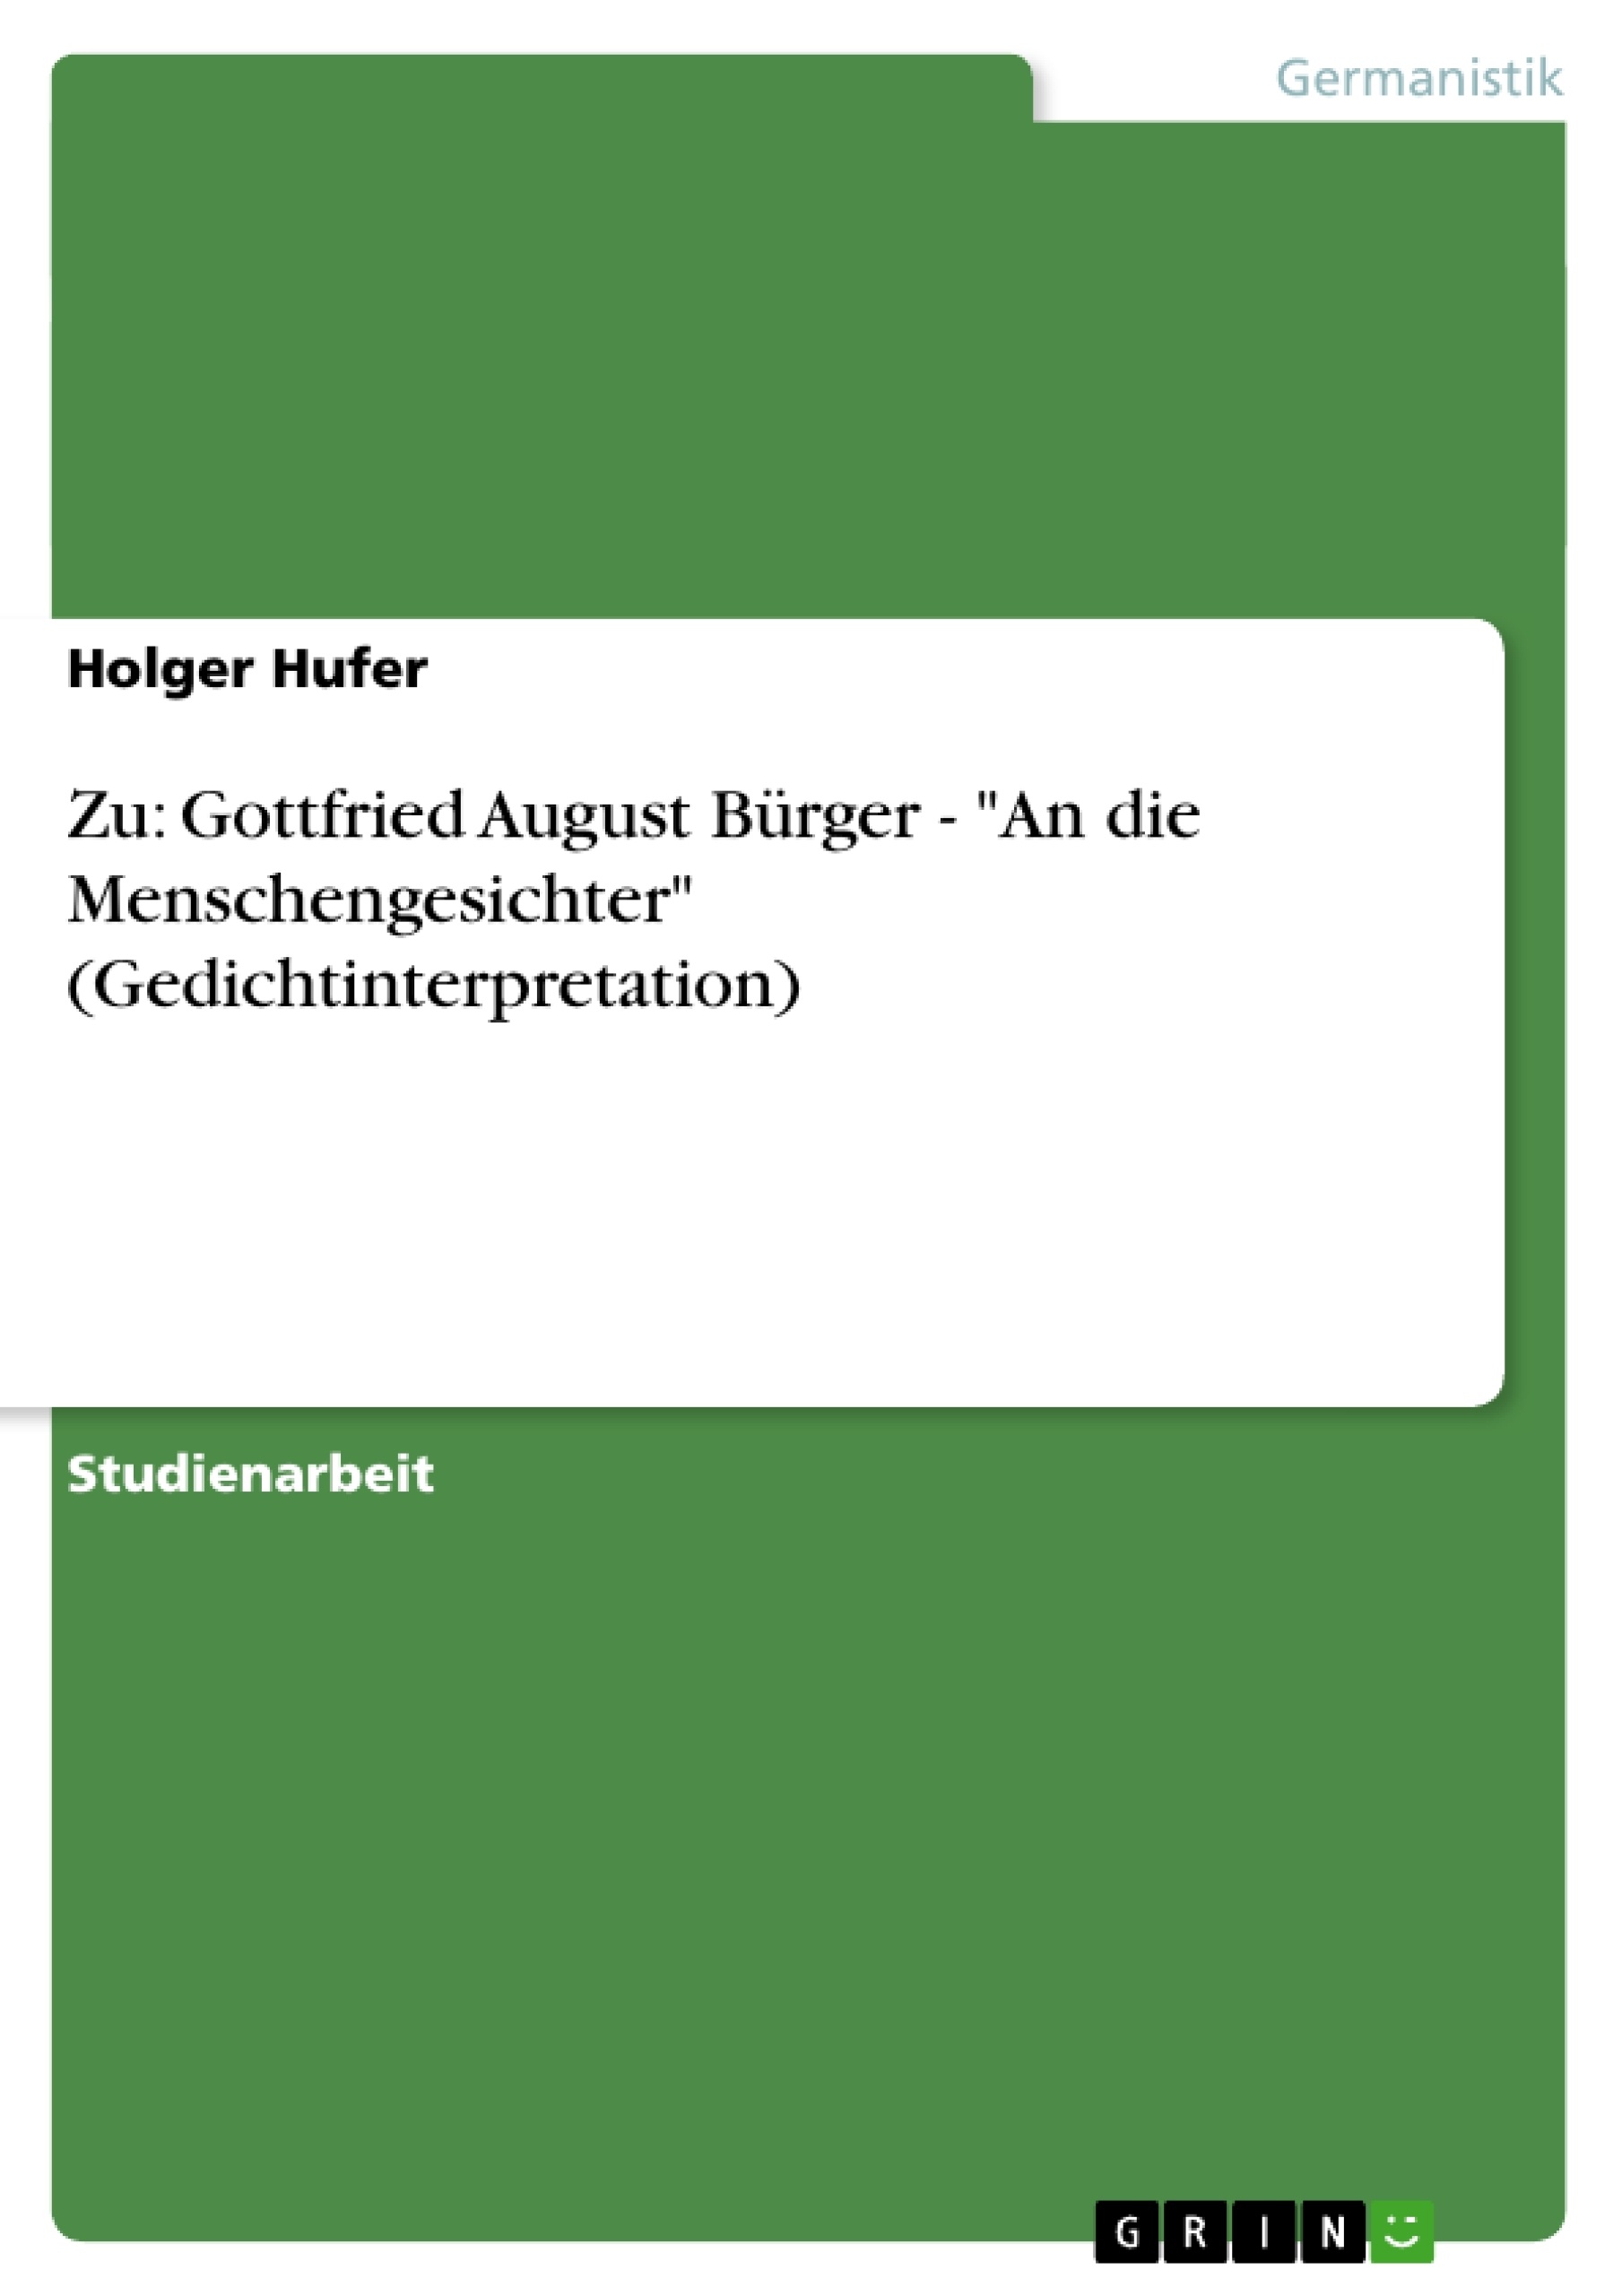 Titre: Zu: Gottfried August Bürger - "An die Menschengesichter" (Gedichtinterpretation)